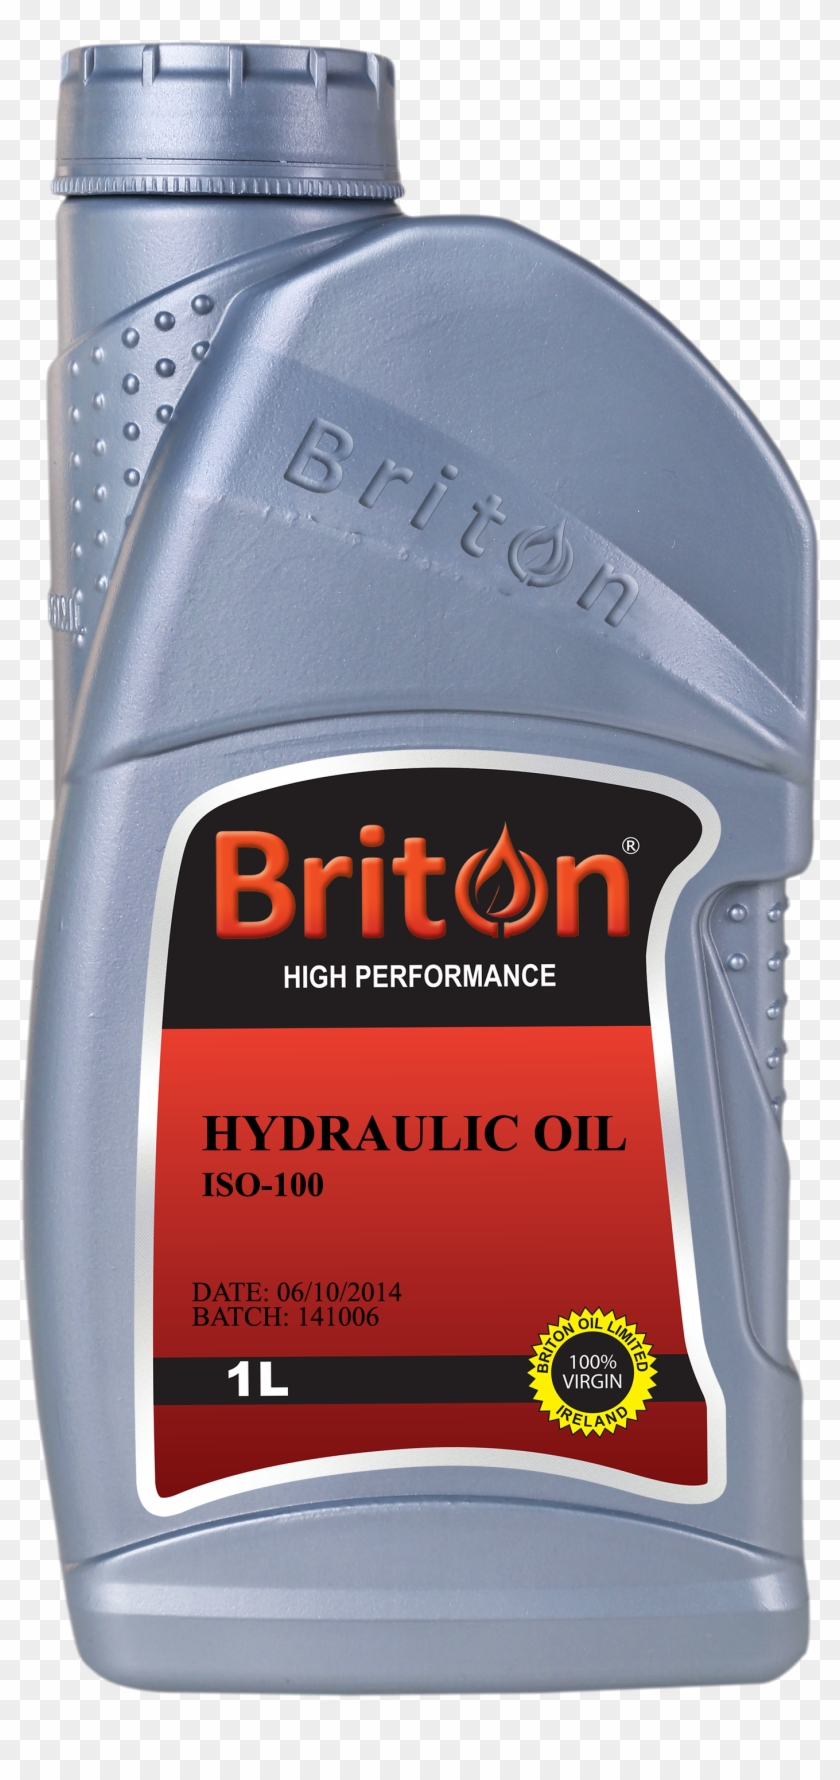 Briton Oil Ltd Providing Motor Oil Lubricants, Diesel - Iso 15 Hydraulic Oil Clipart #3616039